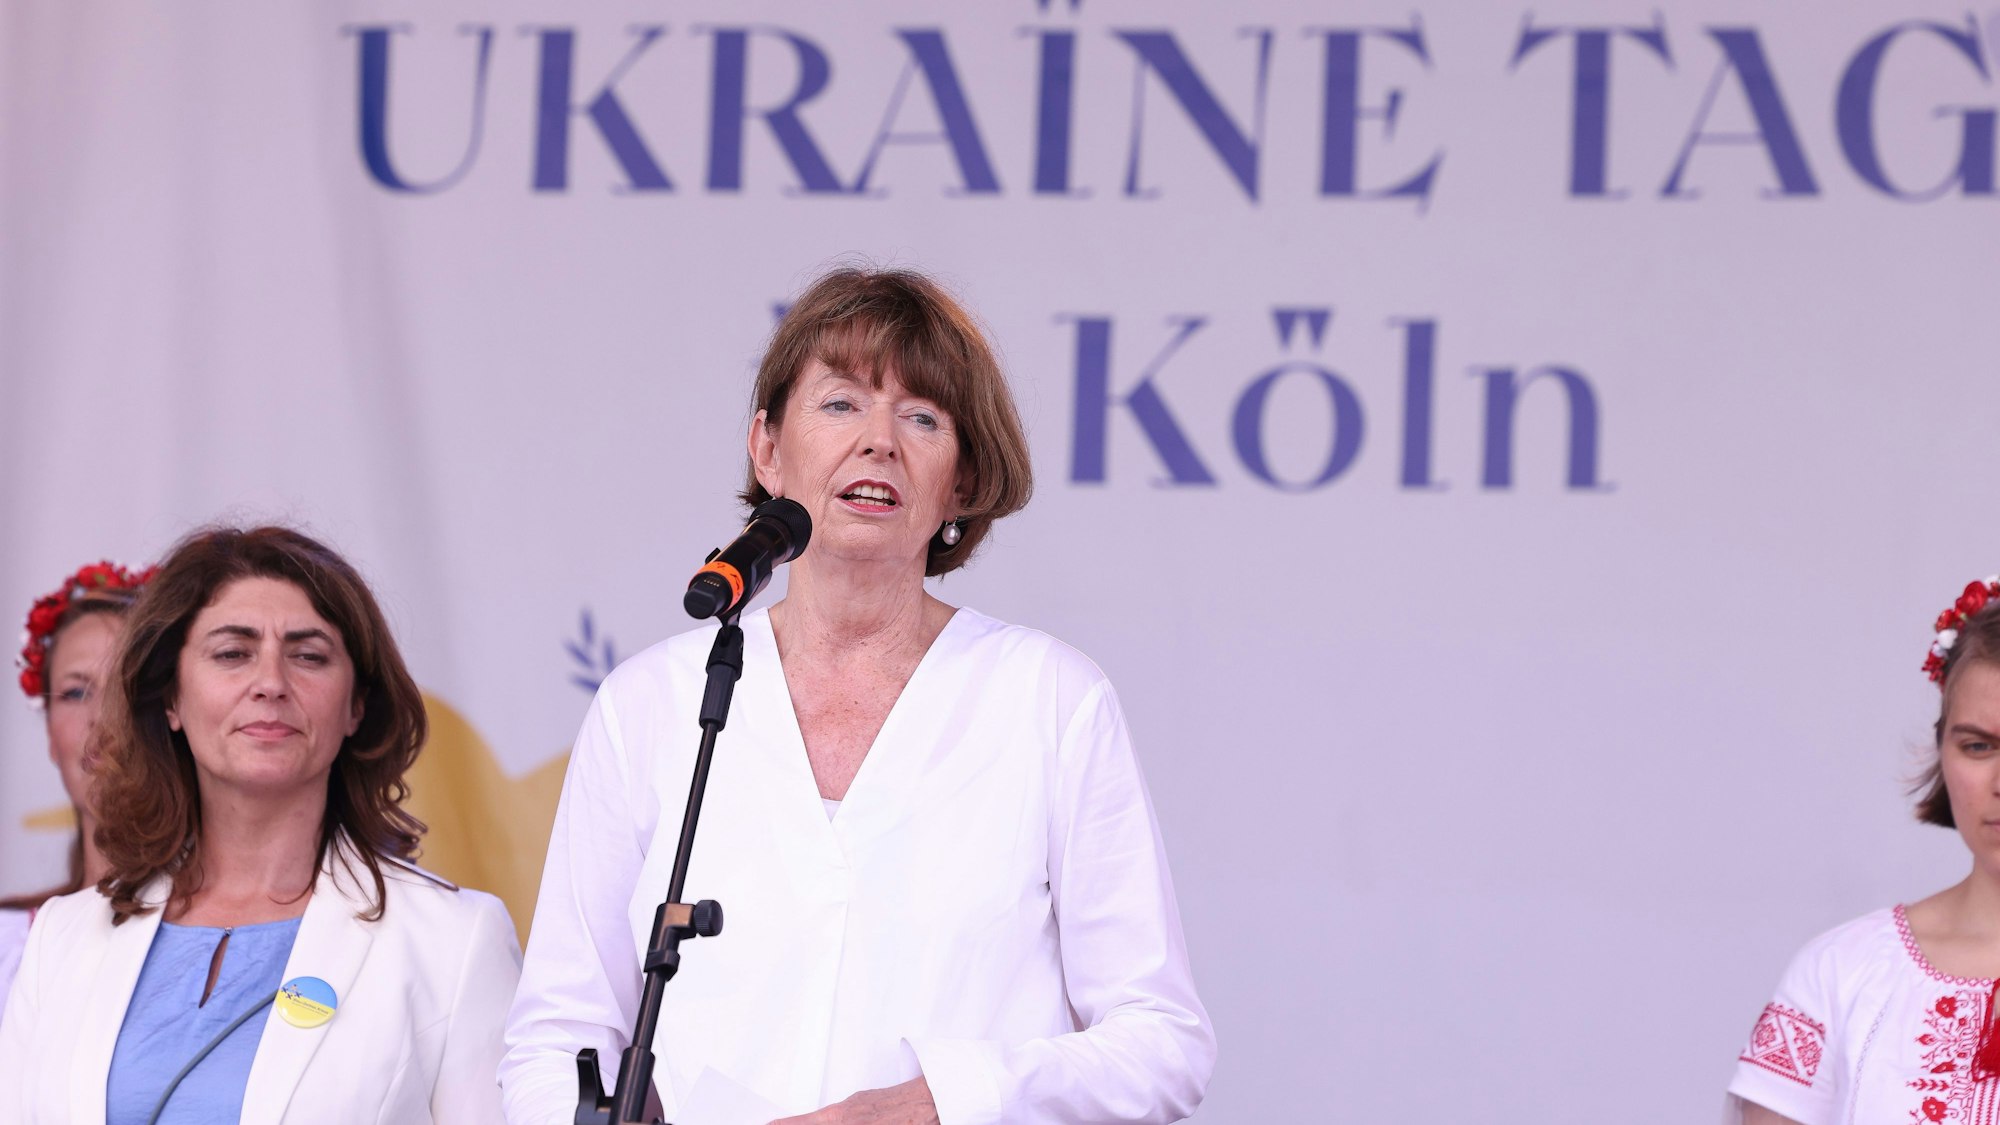 Die Kölner Oberbürgermeisterin Henriette Reker redet auf der Bühne zum Ukraine-Tag.